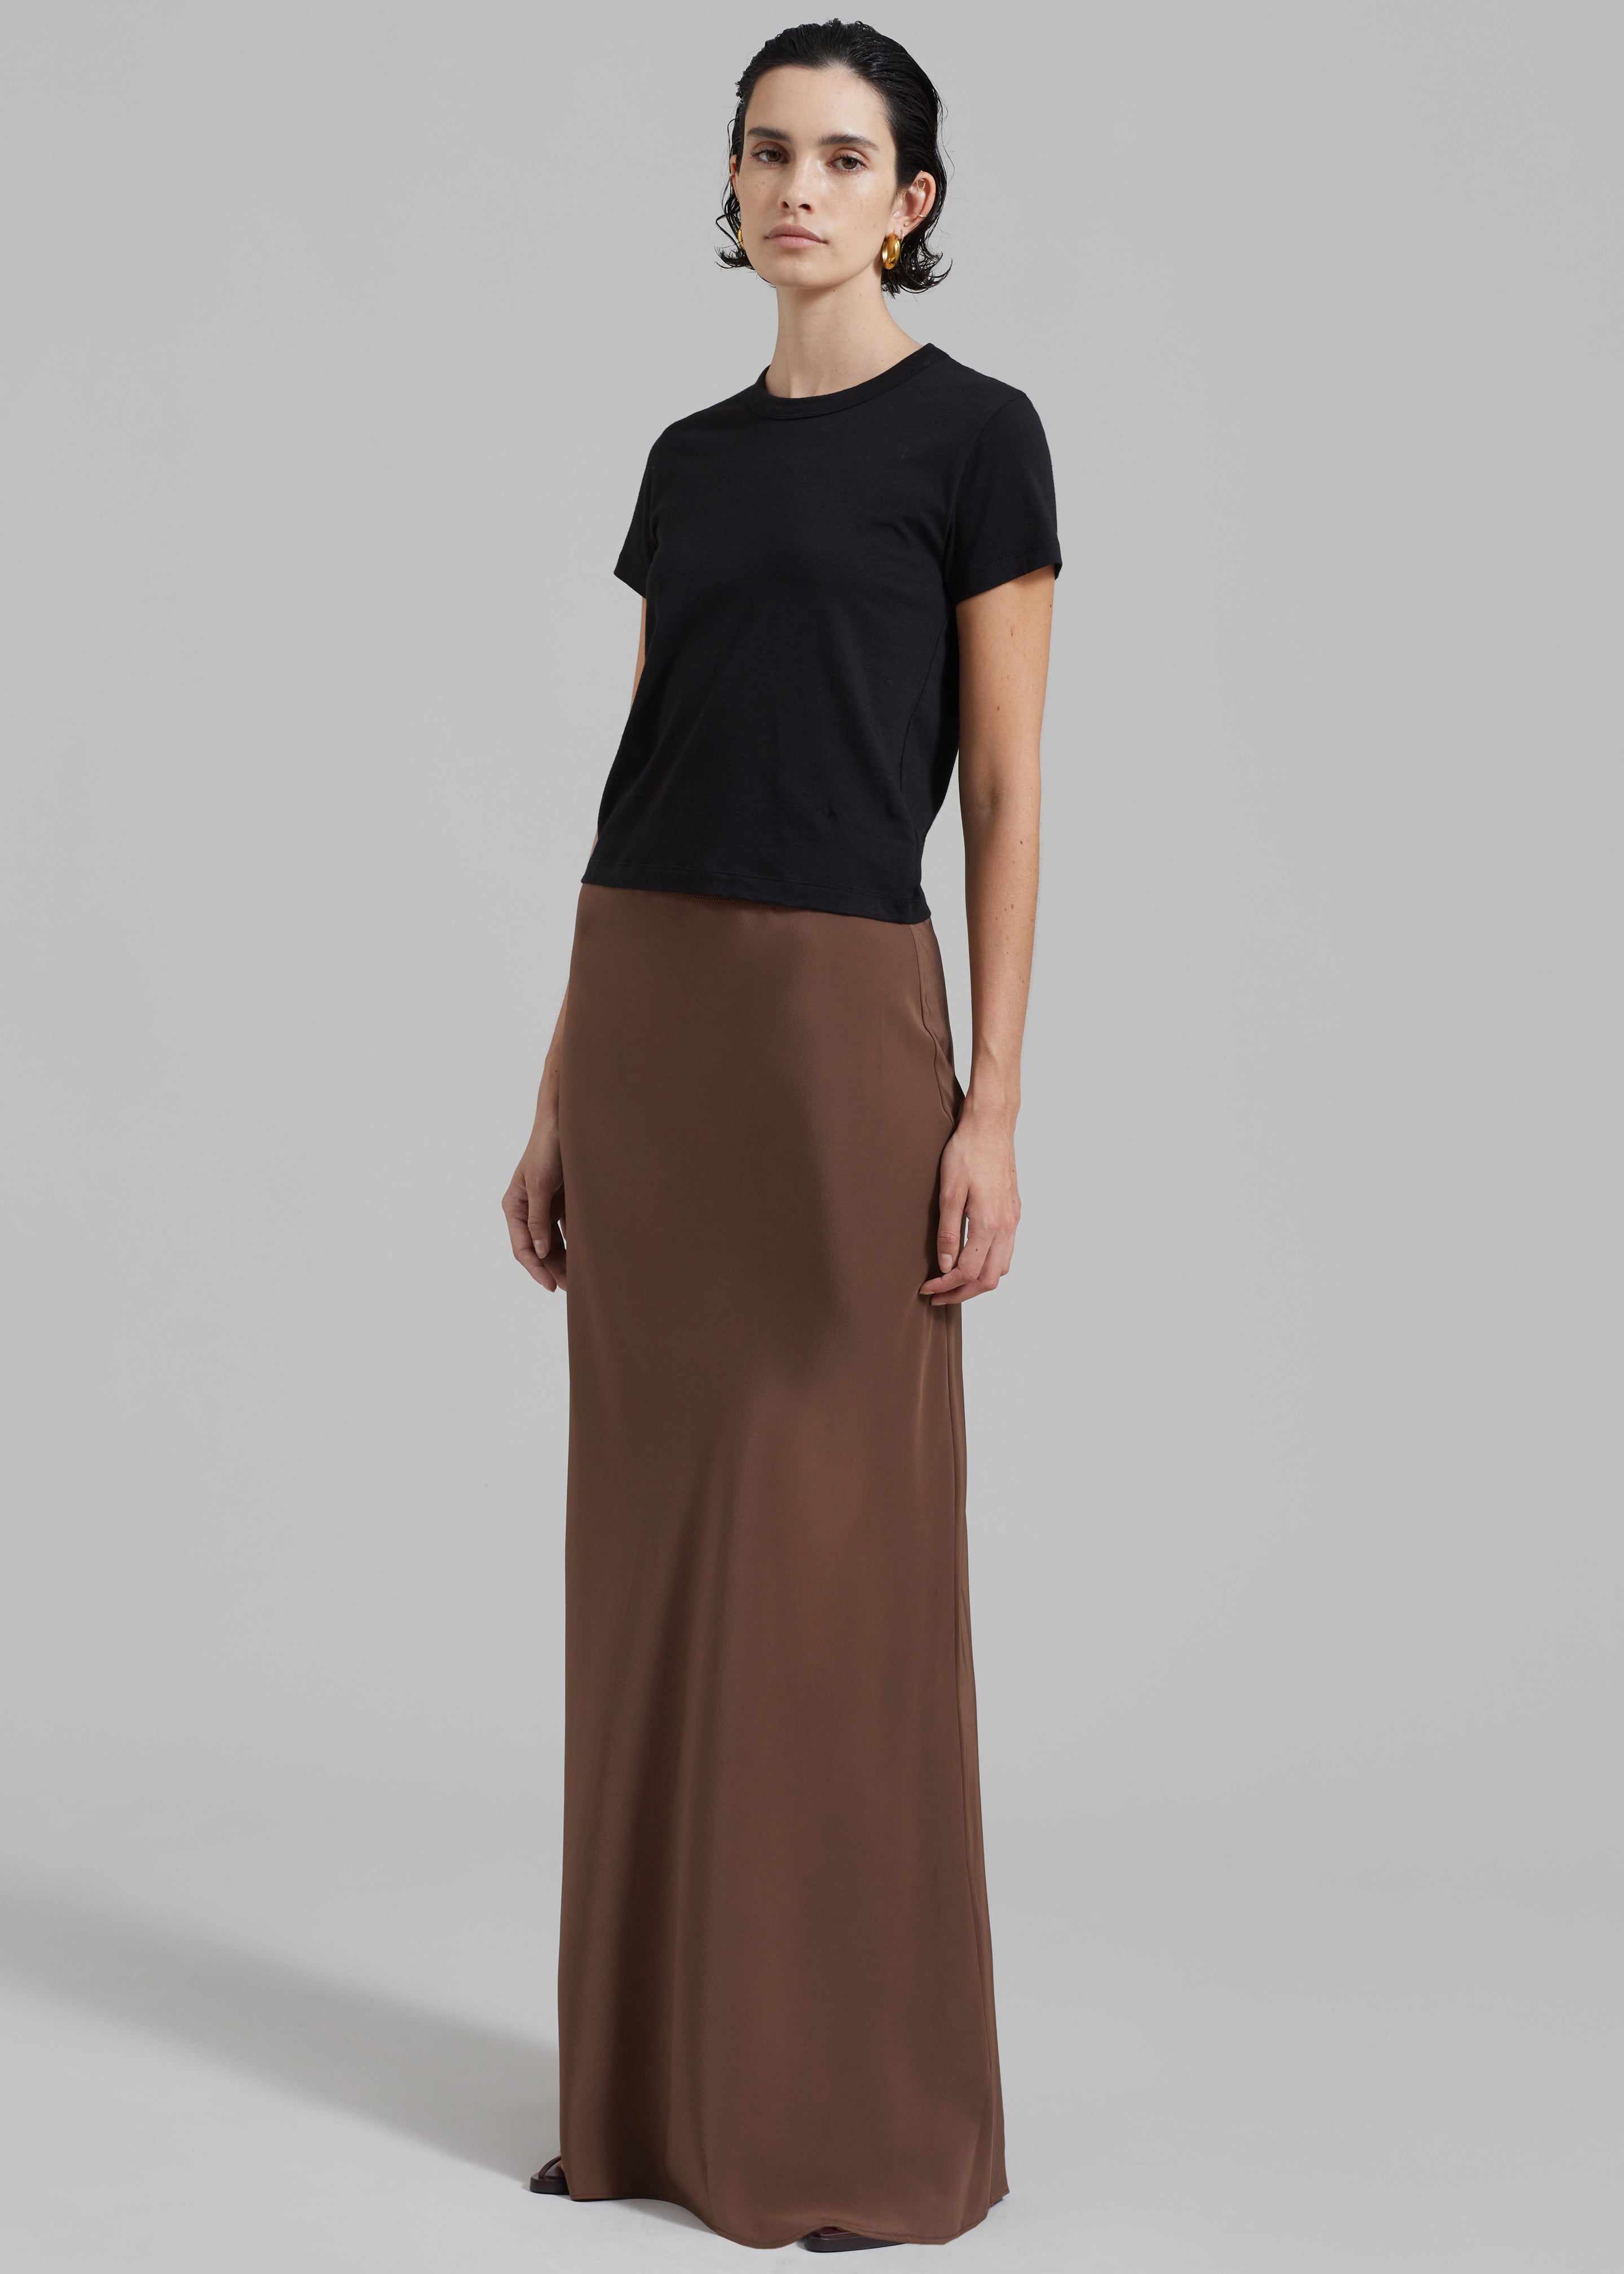 Matteau Bias Elastic Skirt - Sable - 3